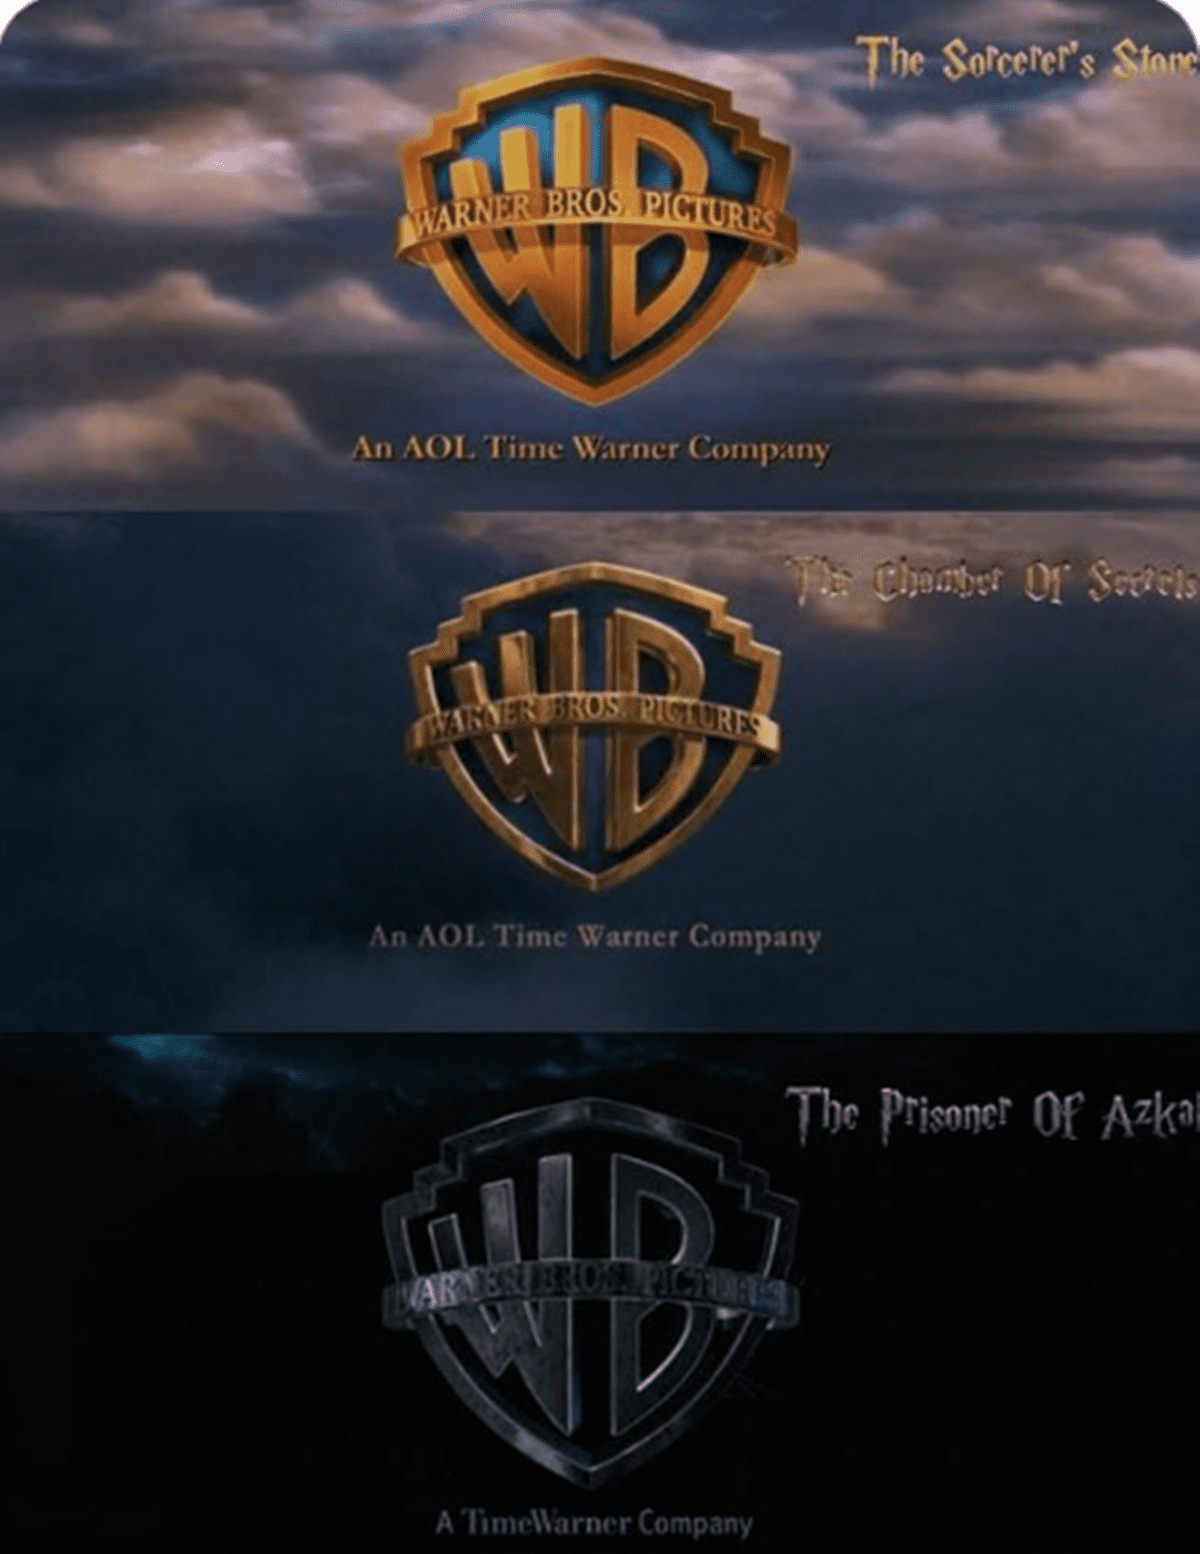 6 apró részlet a Harry Potter-filmekben, amiket tuti nem szúrtál ki